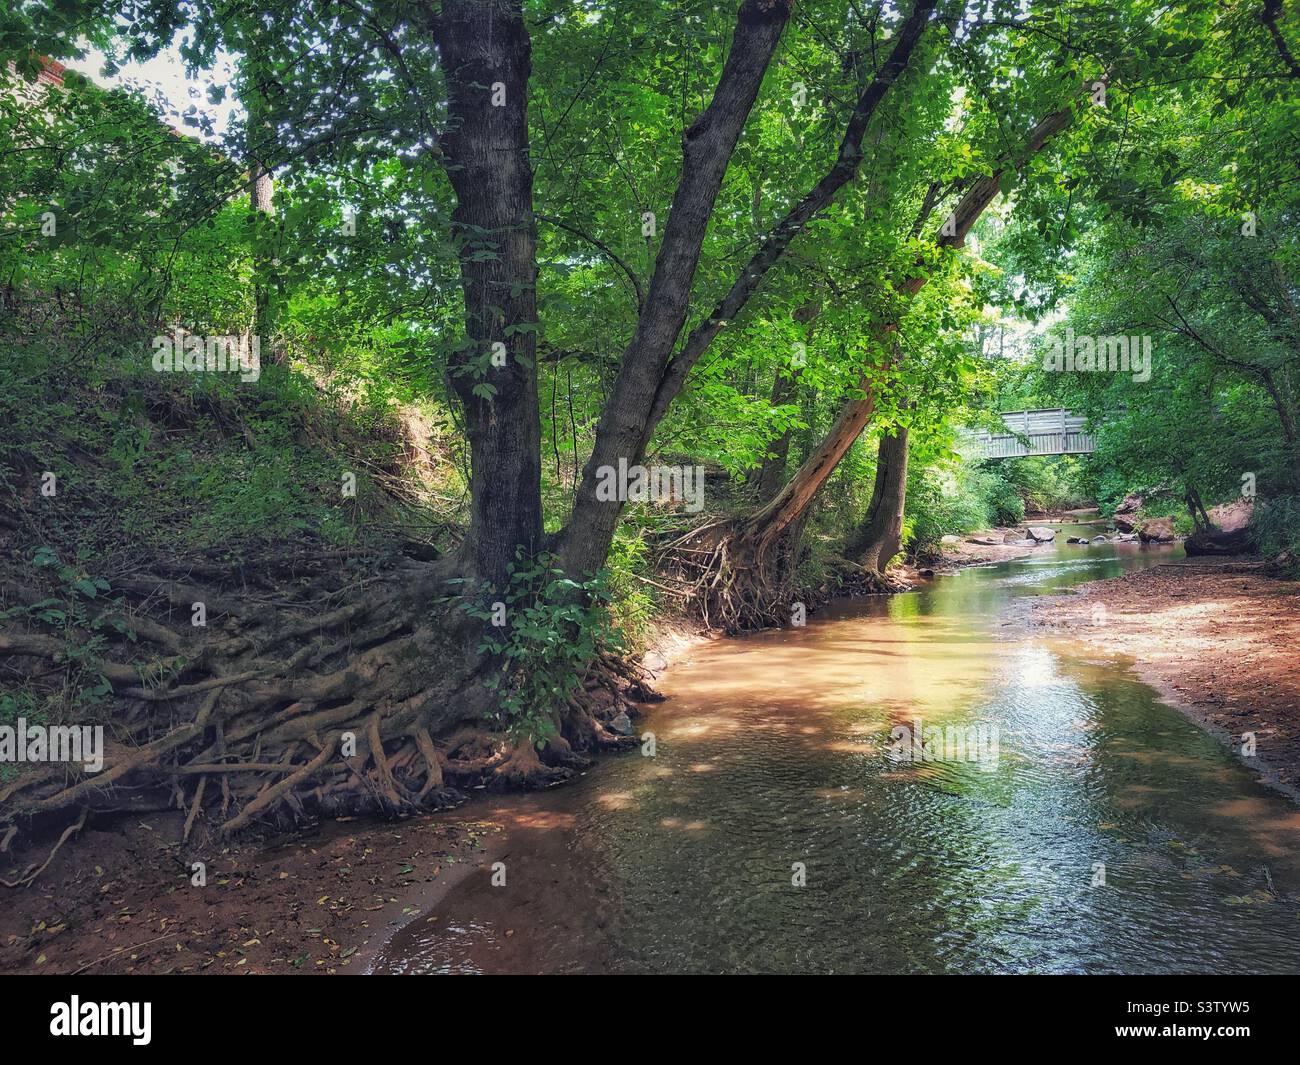 Creek with bridge Stock Photo